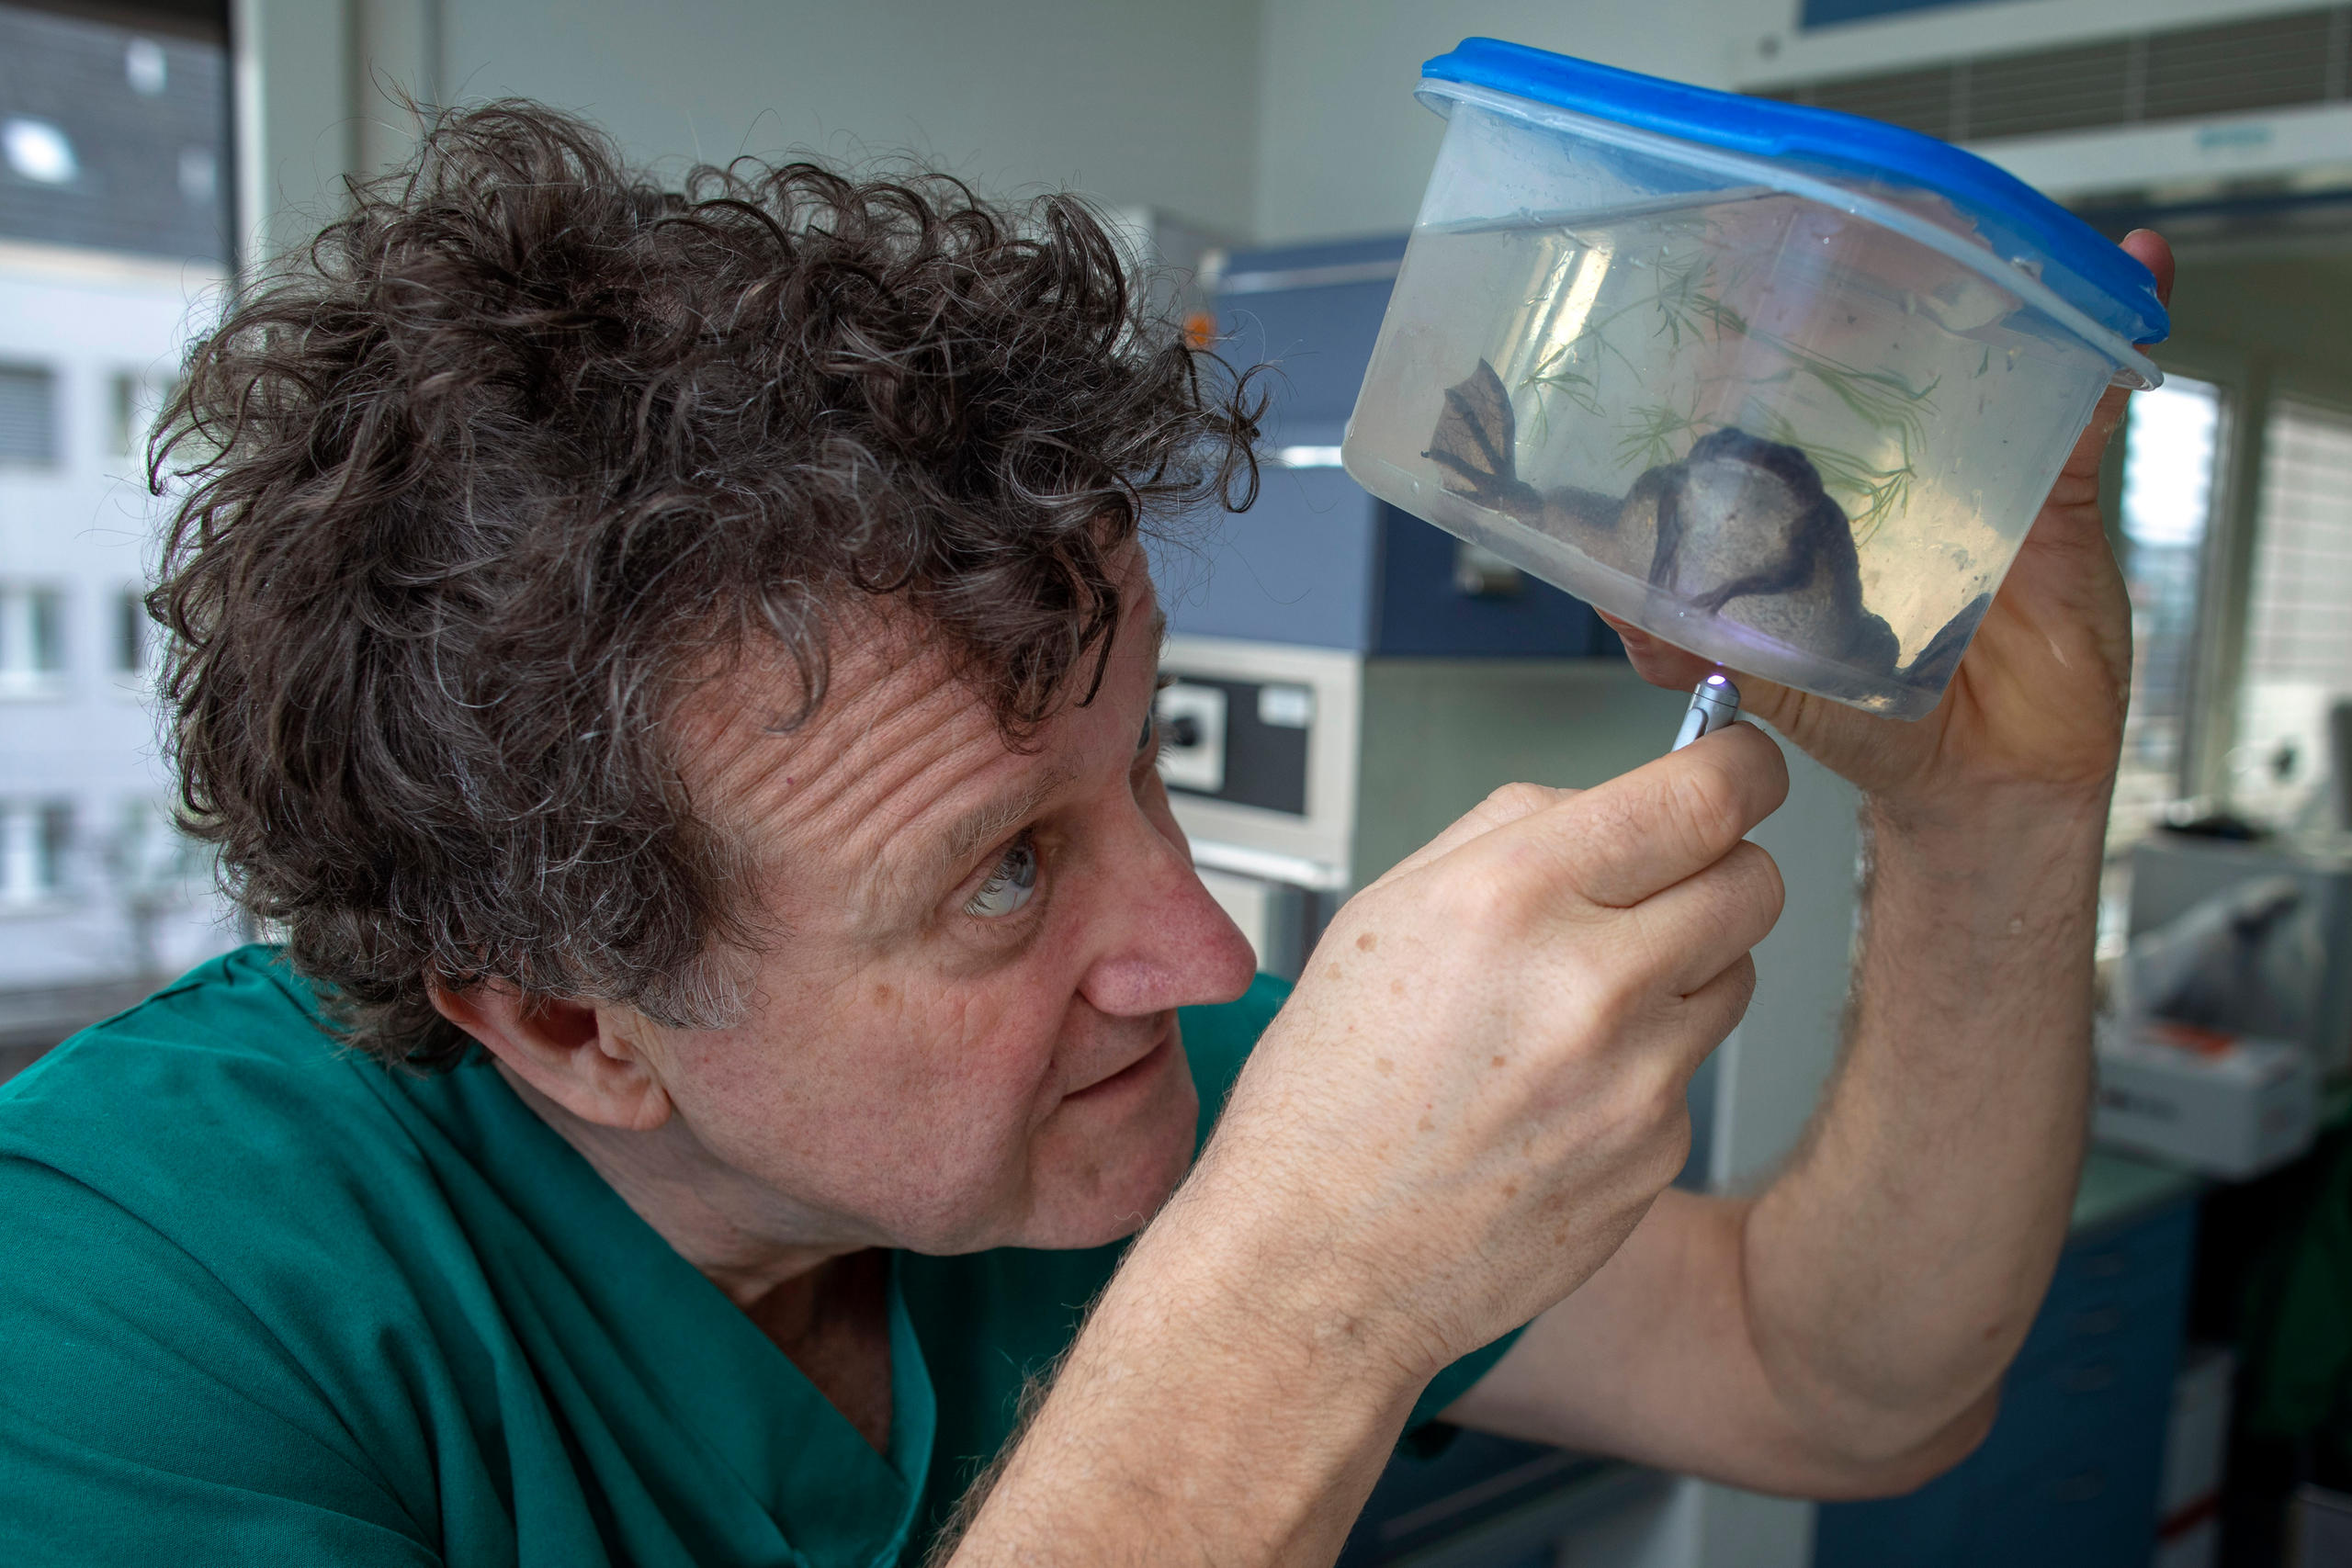 il veterinario osserva una rana in una scatola di plastica